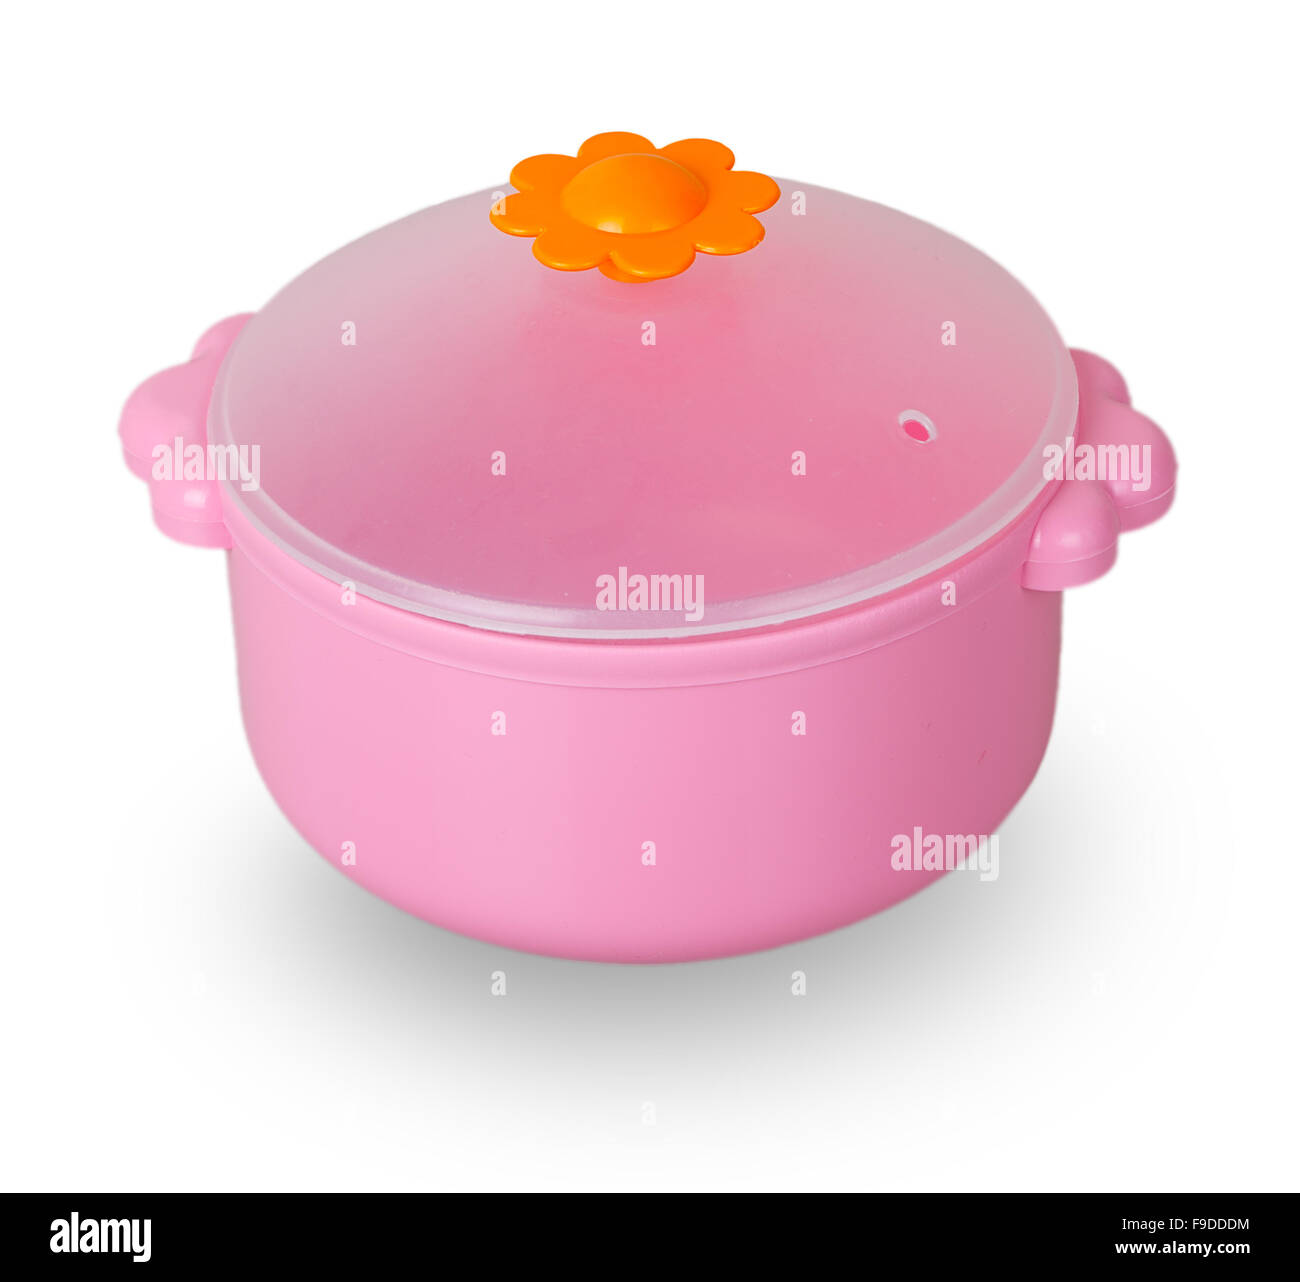 Pan jouet rose isolé sur fond blanc Banque D'Images